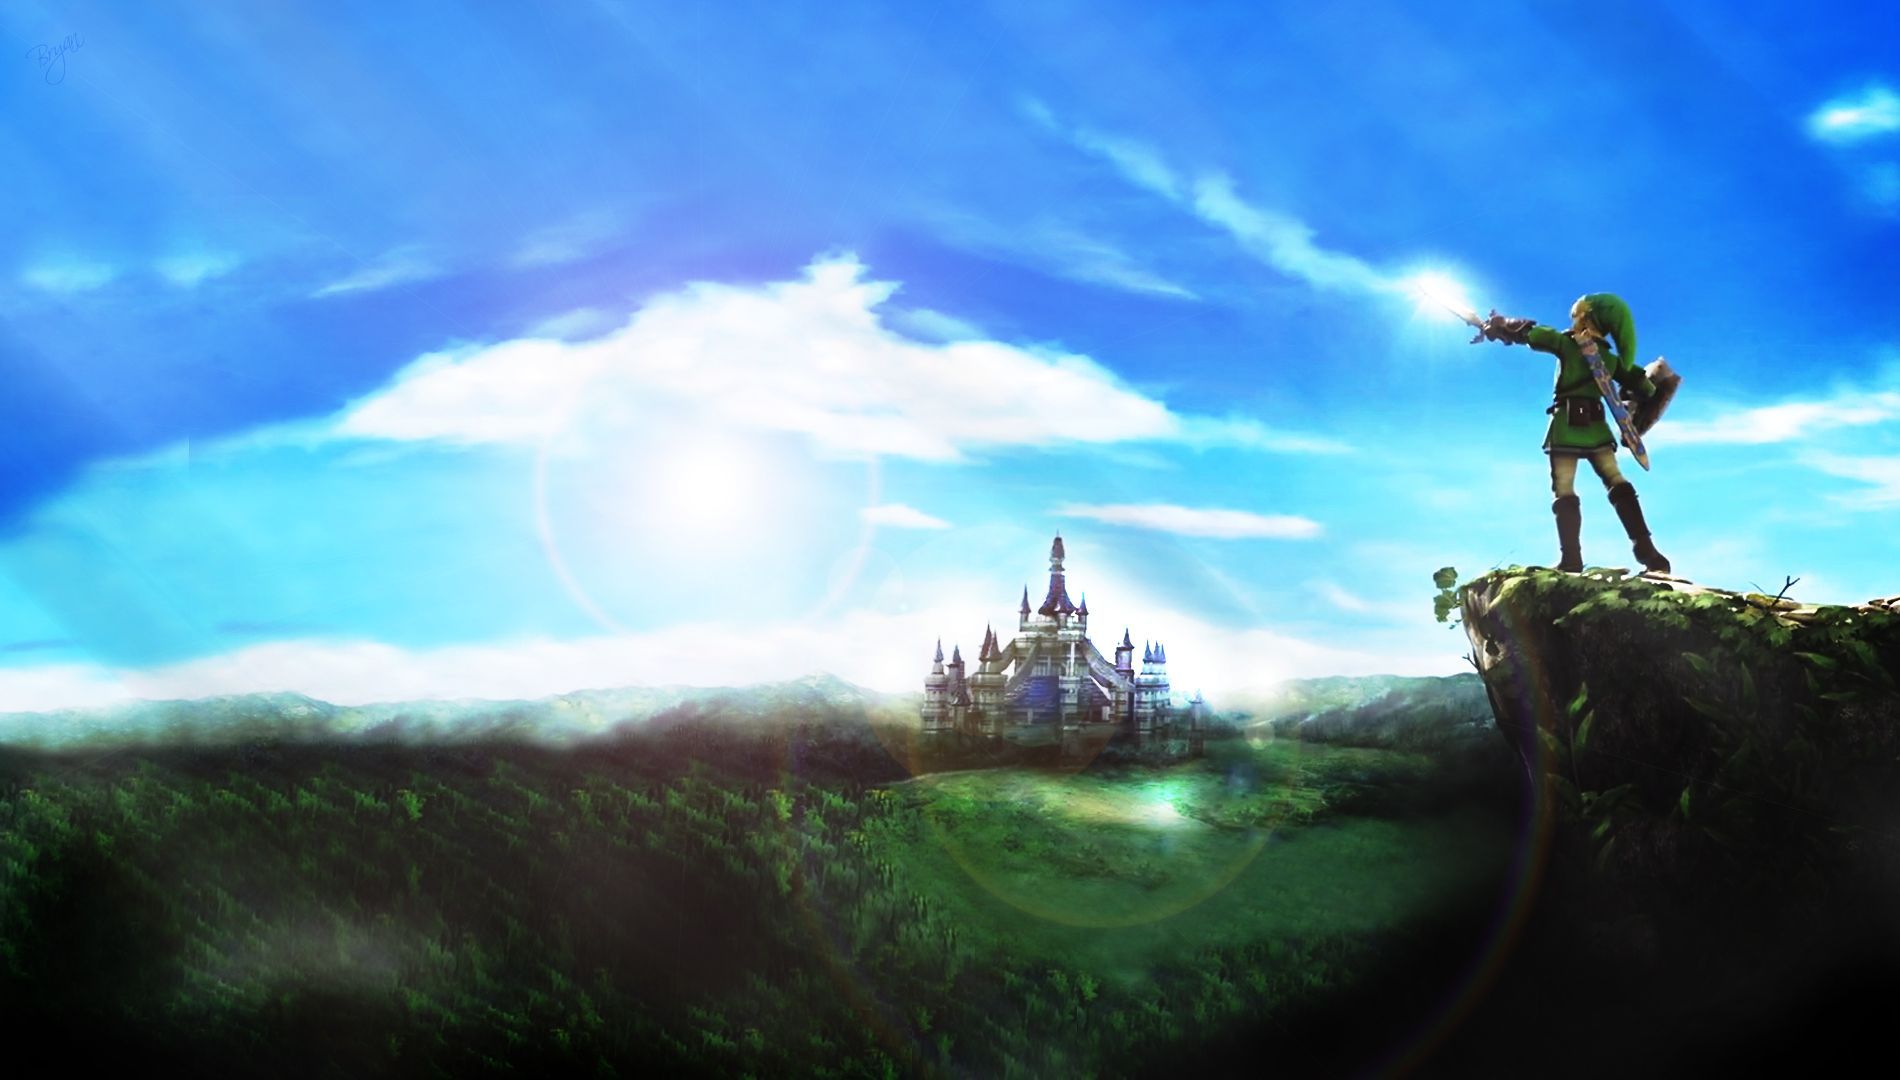 Zelda Background free download. Wallpaper, Background, Image, Art Photo. New zelda, Legend of zelda, Zelda hd